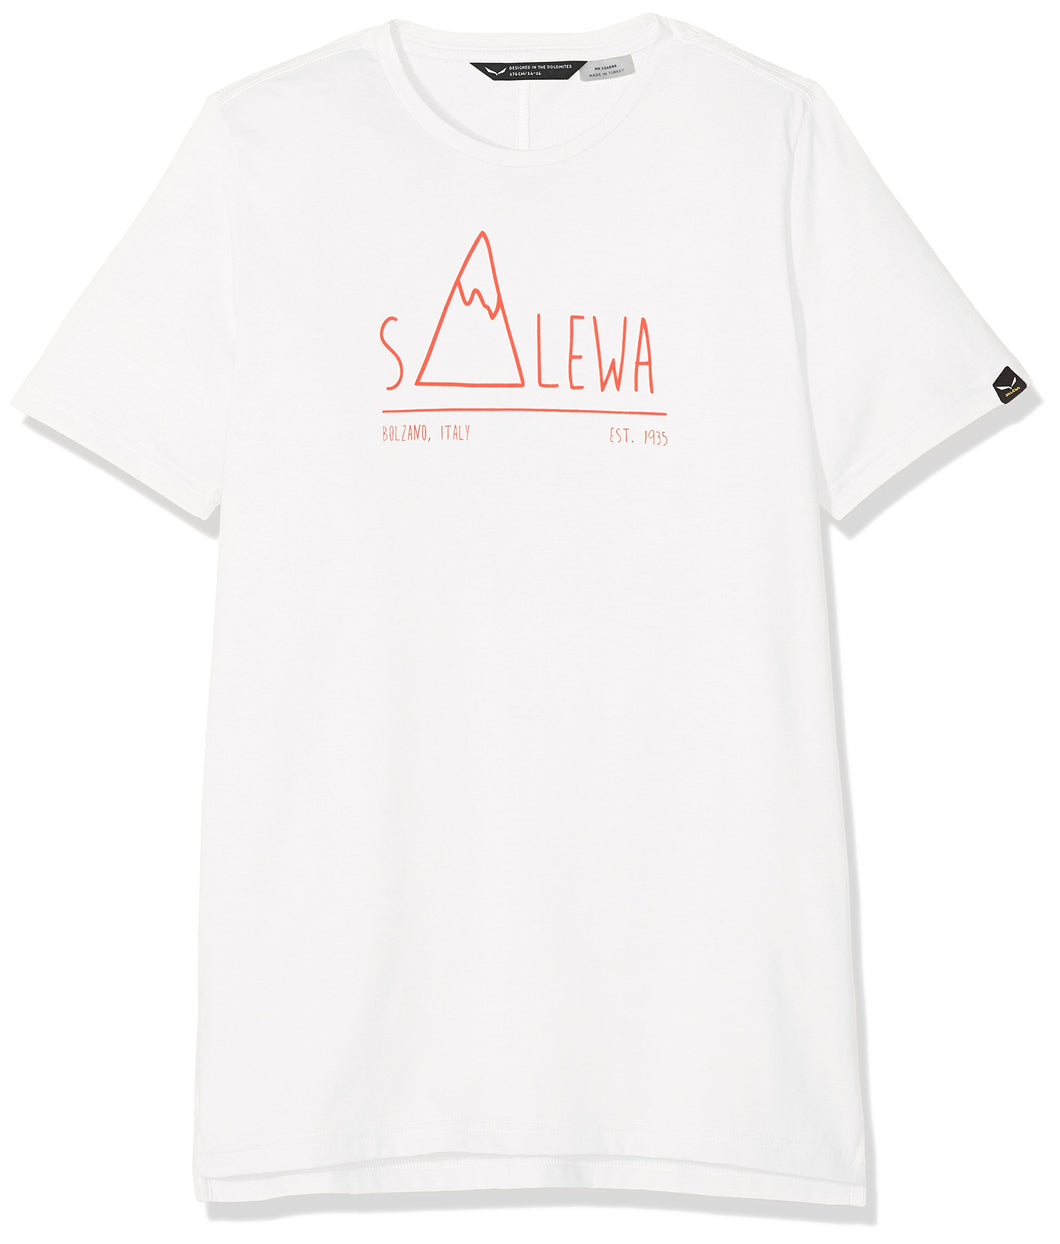 SALEWA Frea Peak Dry K S/S Tee, T-Shirt Bambino